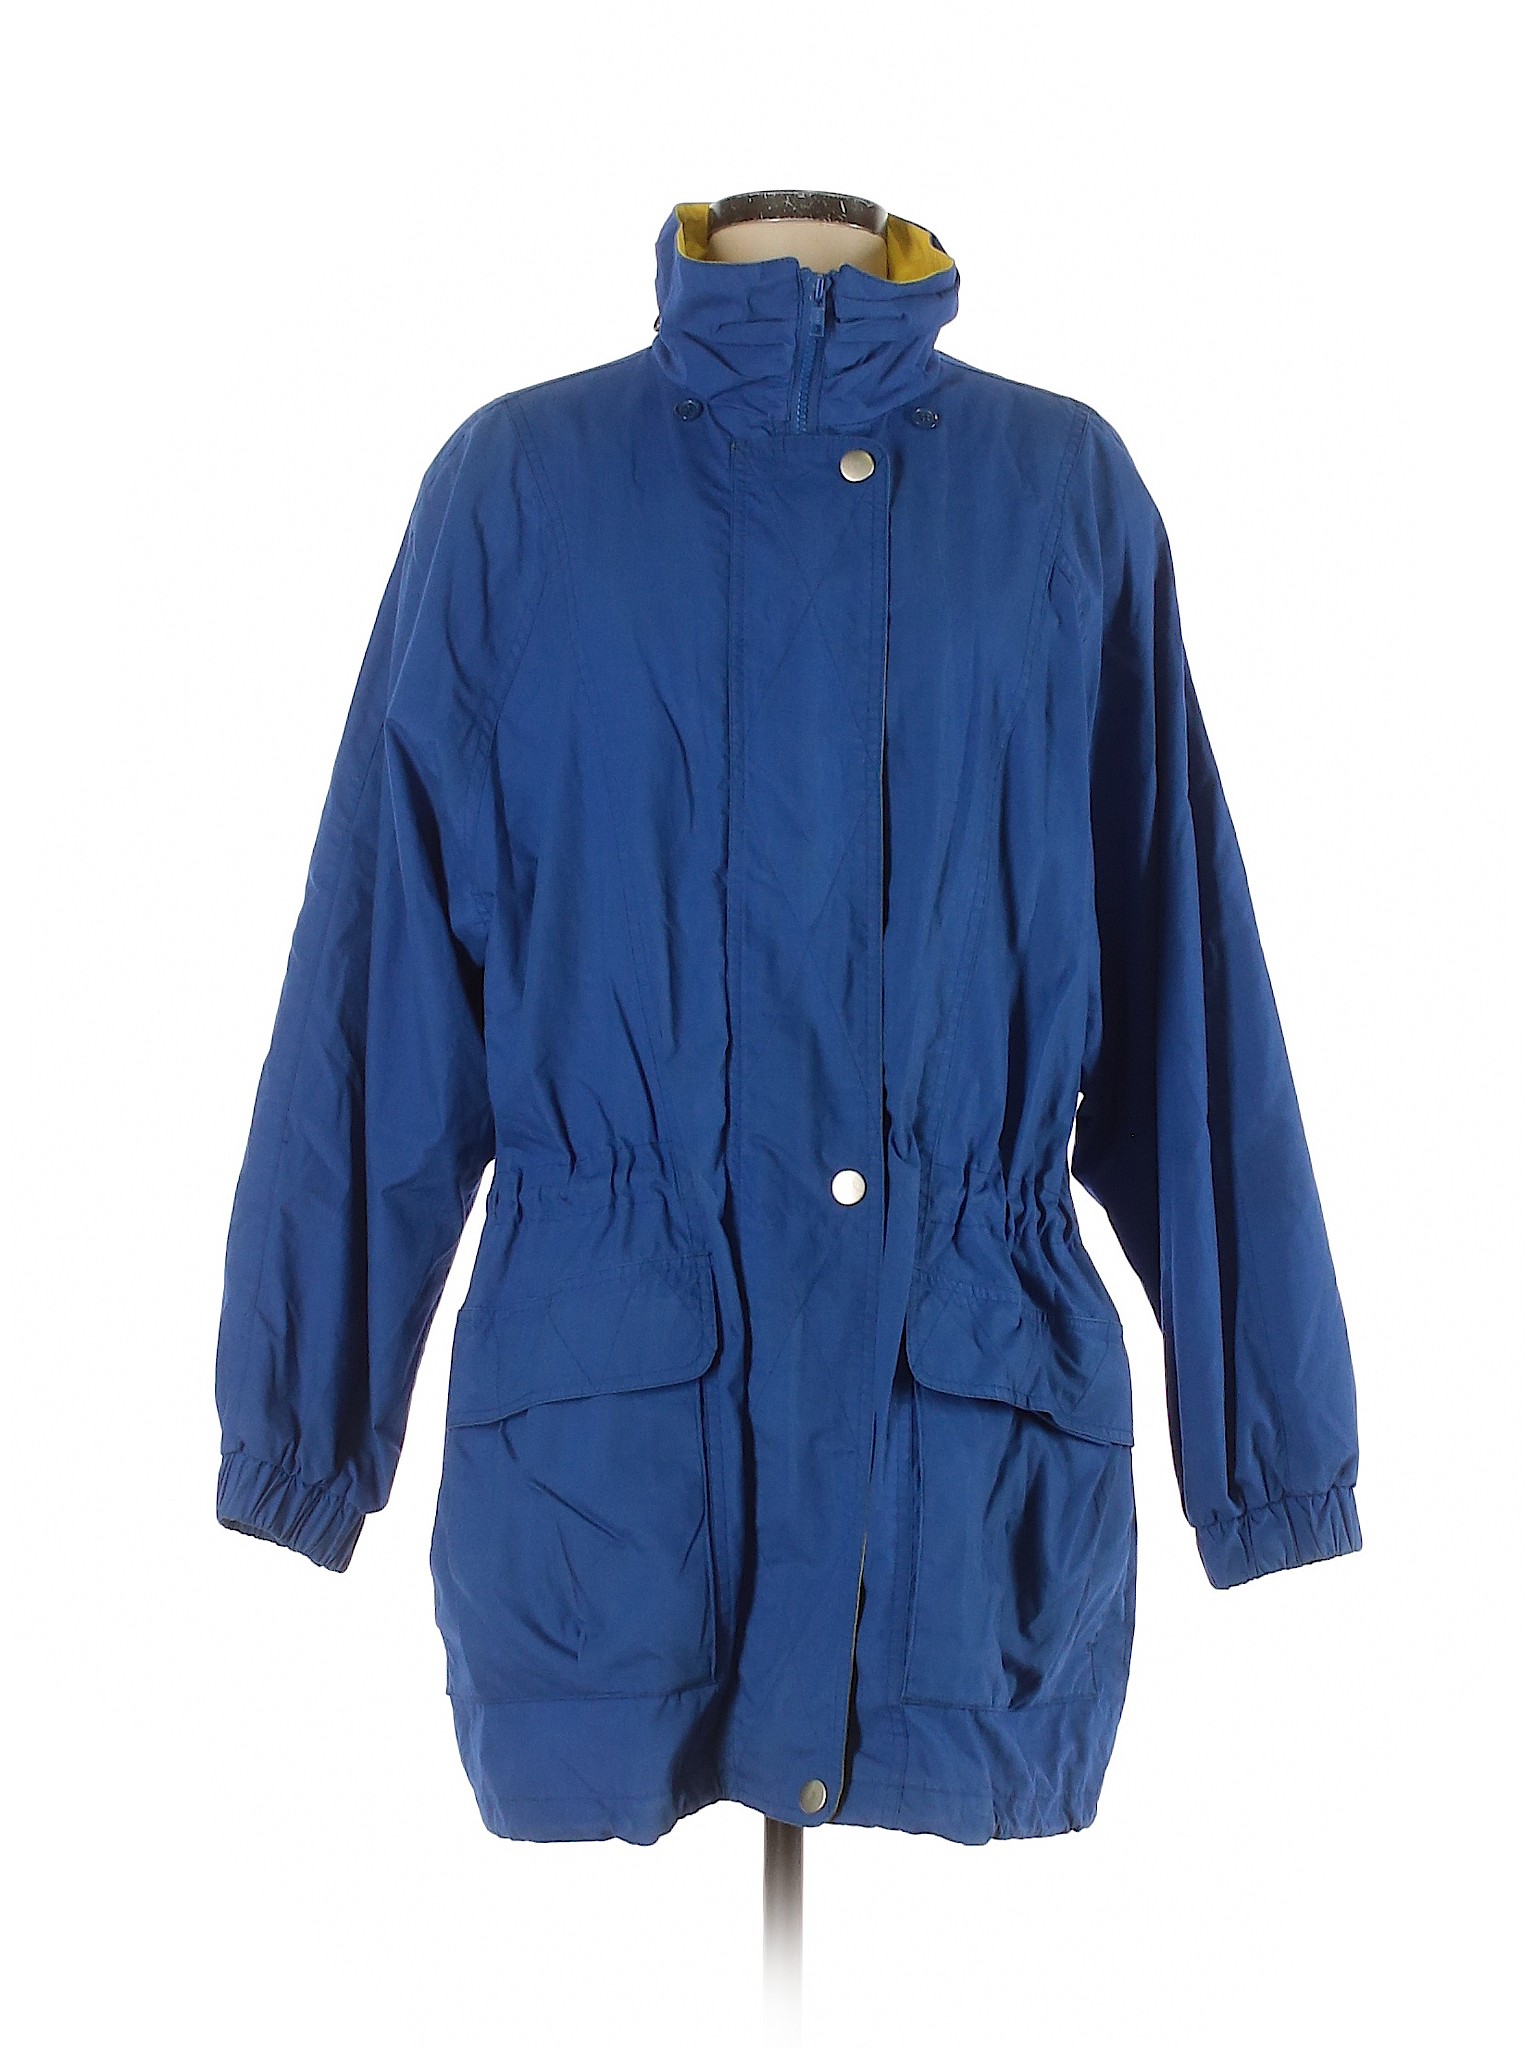 London Fog Women Blue Jacket M | eBay